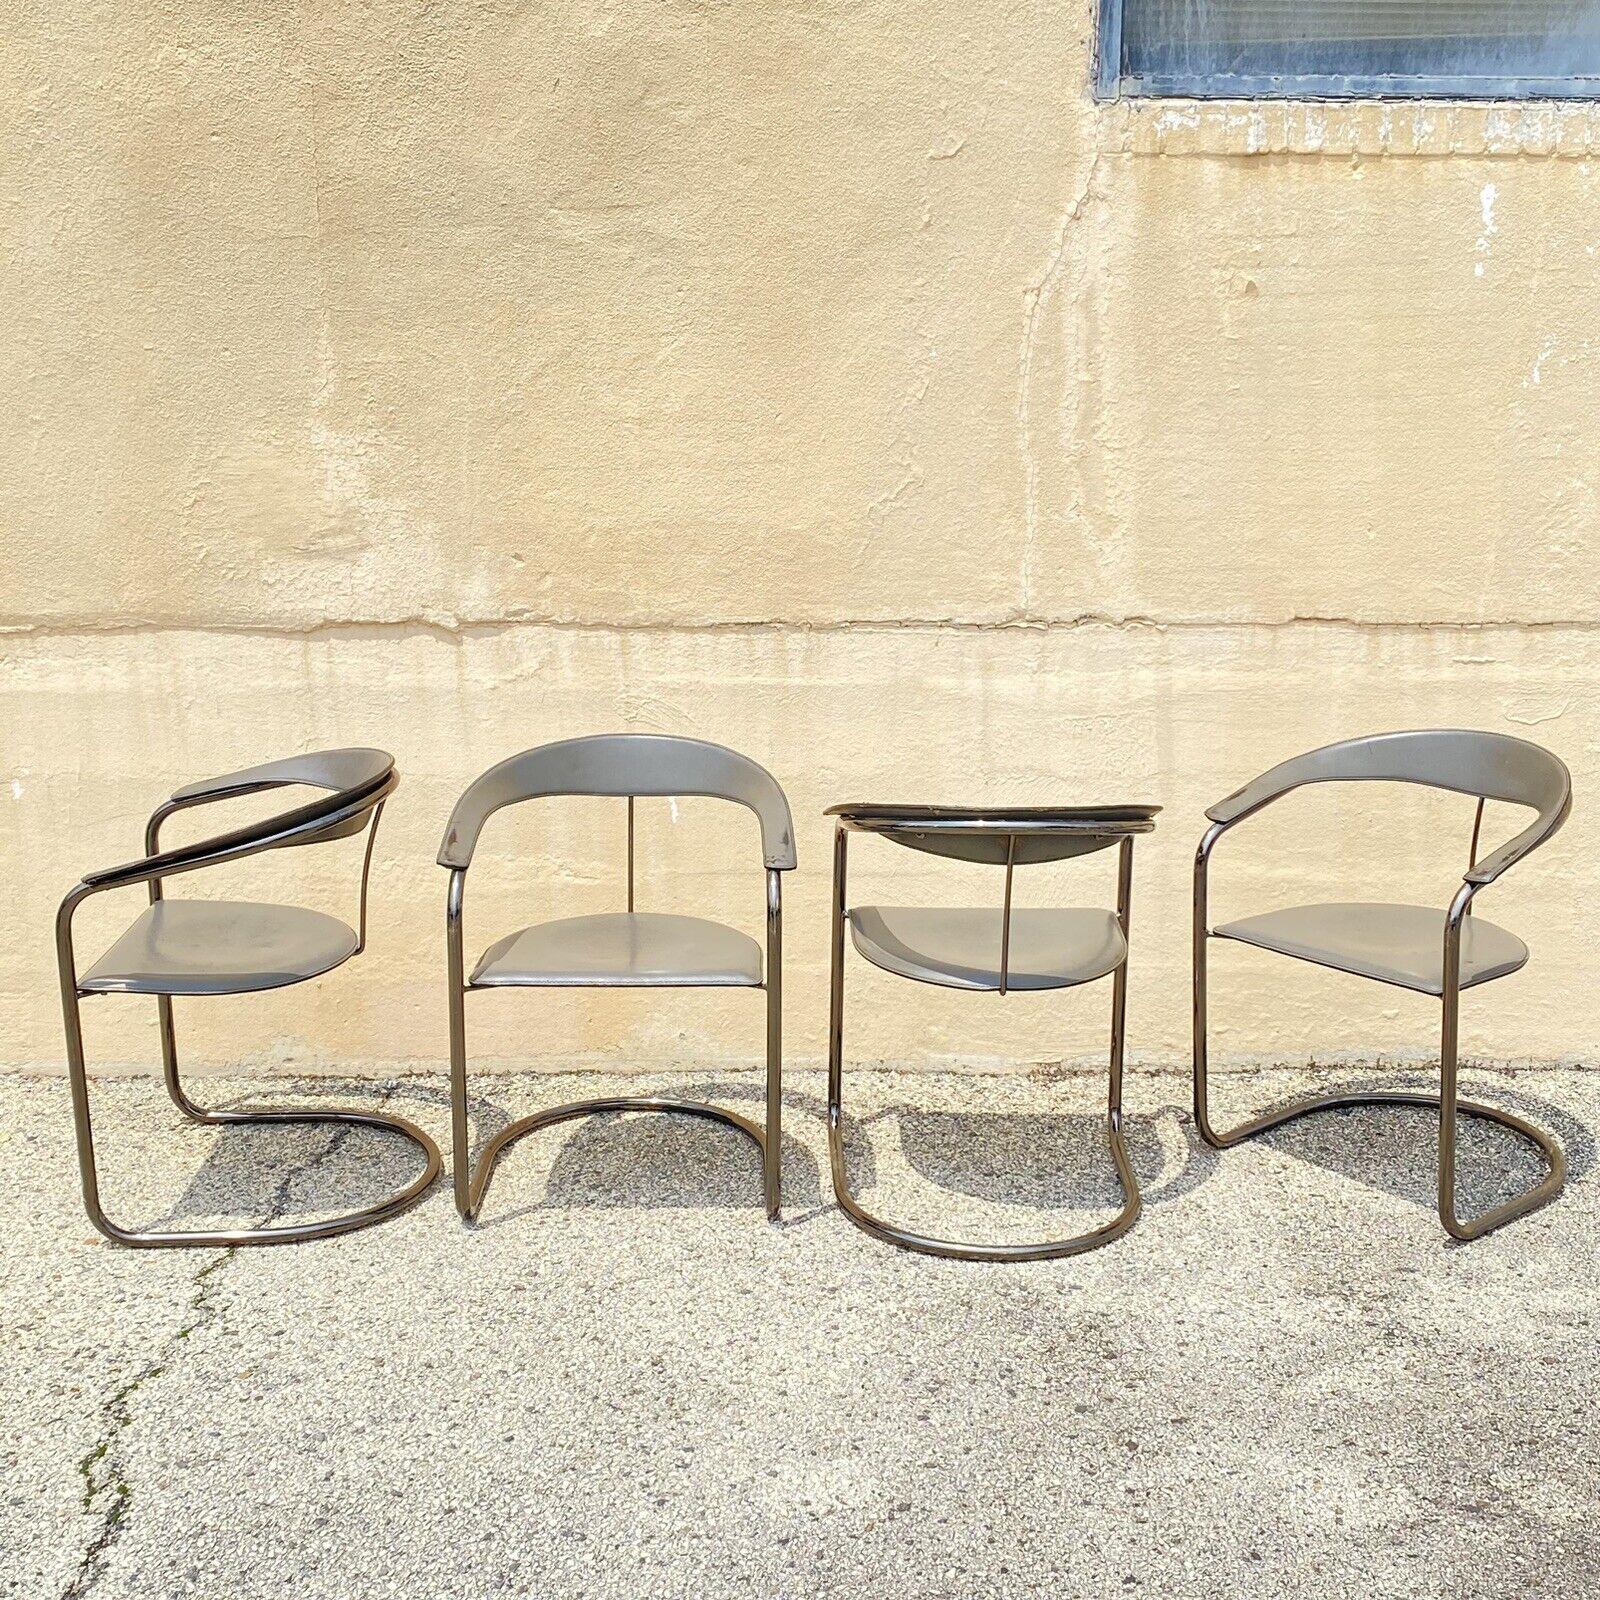 Vintage Arrben Italy Canasta Cantilever Gray Leather Italian Modern Chairs - Set von 4. Artikel verfügt über graues Leder zurück und Sitze, Stahl-Metall-Freischwinger Rahmen, original Hersteller Stempel, saubere modernistische Linien, Qualität